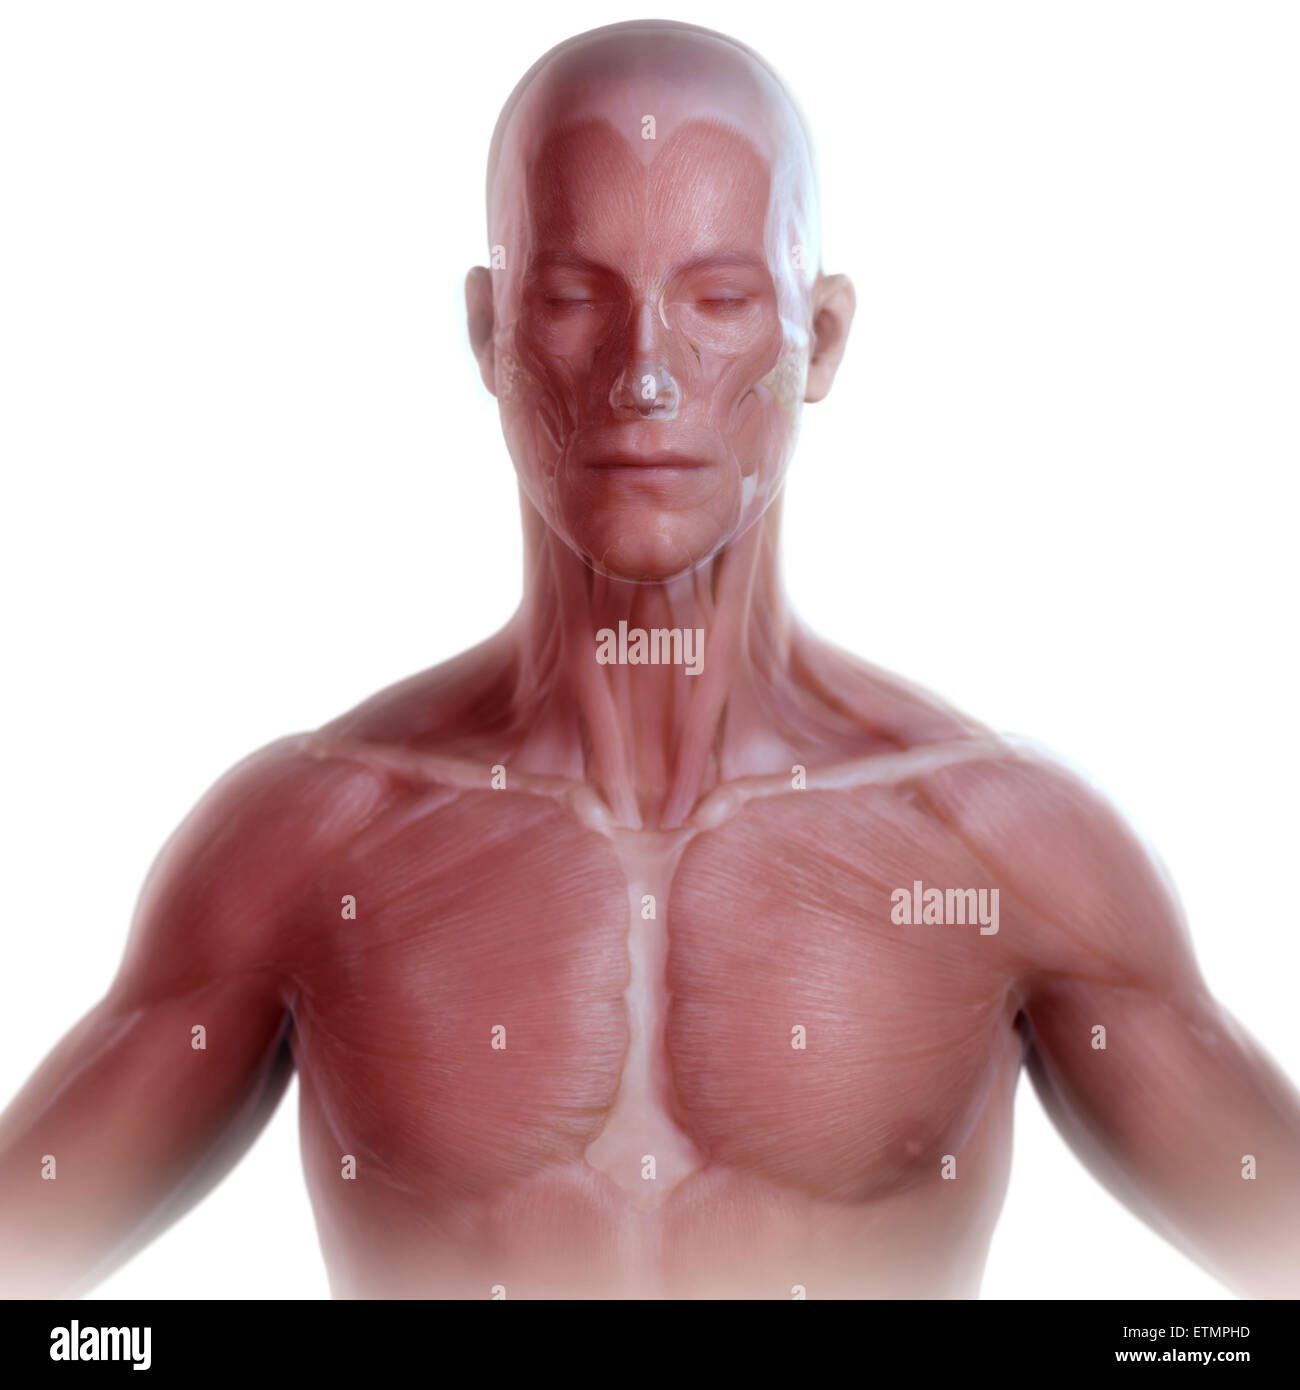 Imagen conceptual de la cara y parte superior del cuerpo con la musculatura visible bajo la piel. Foto de stock